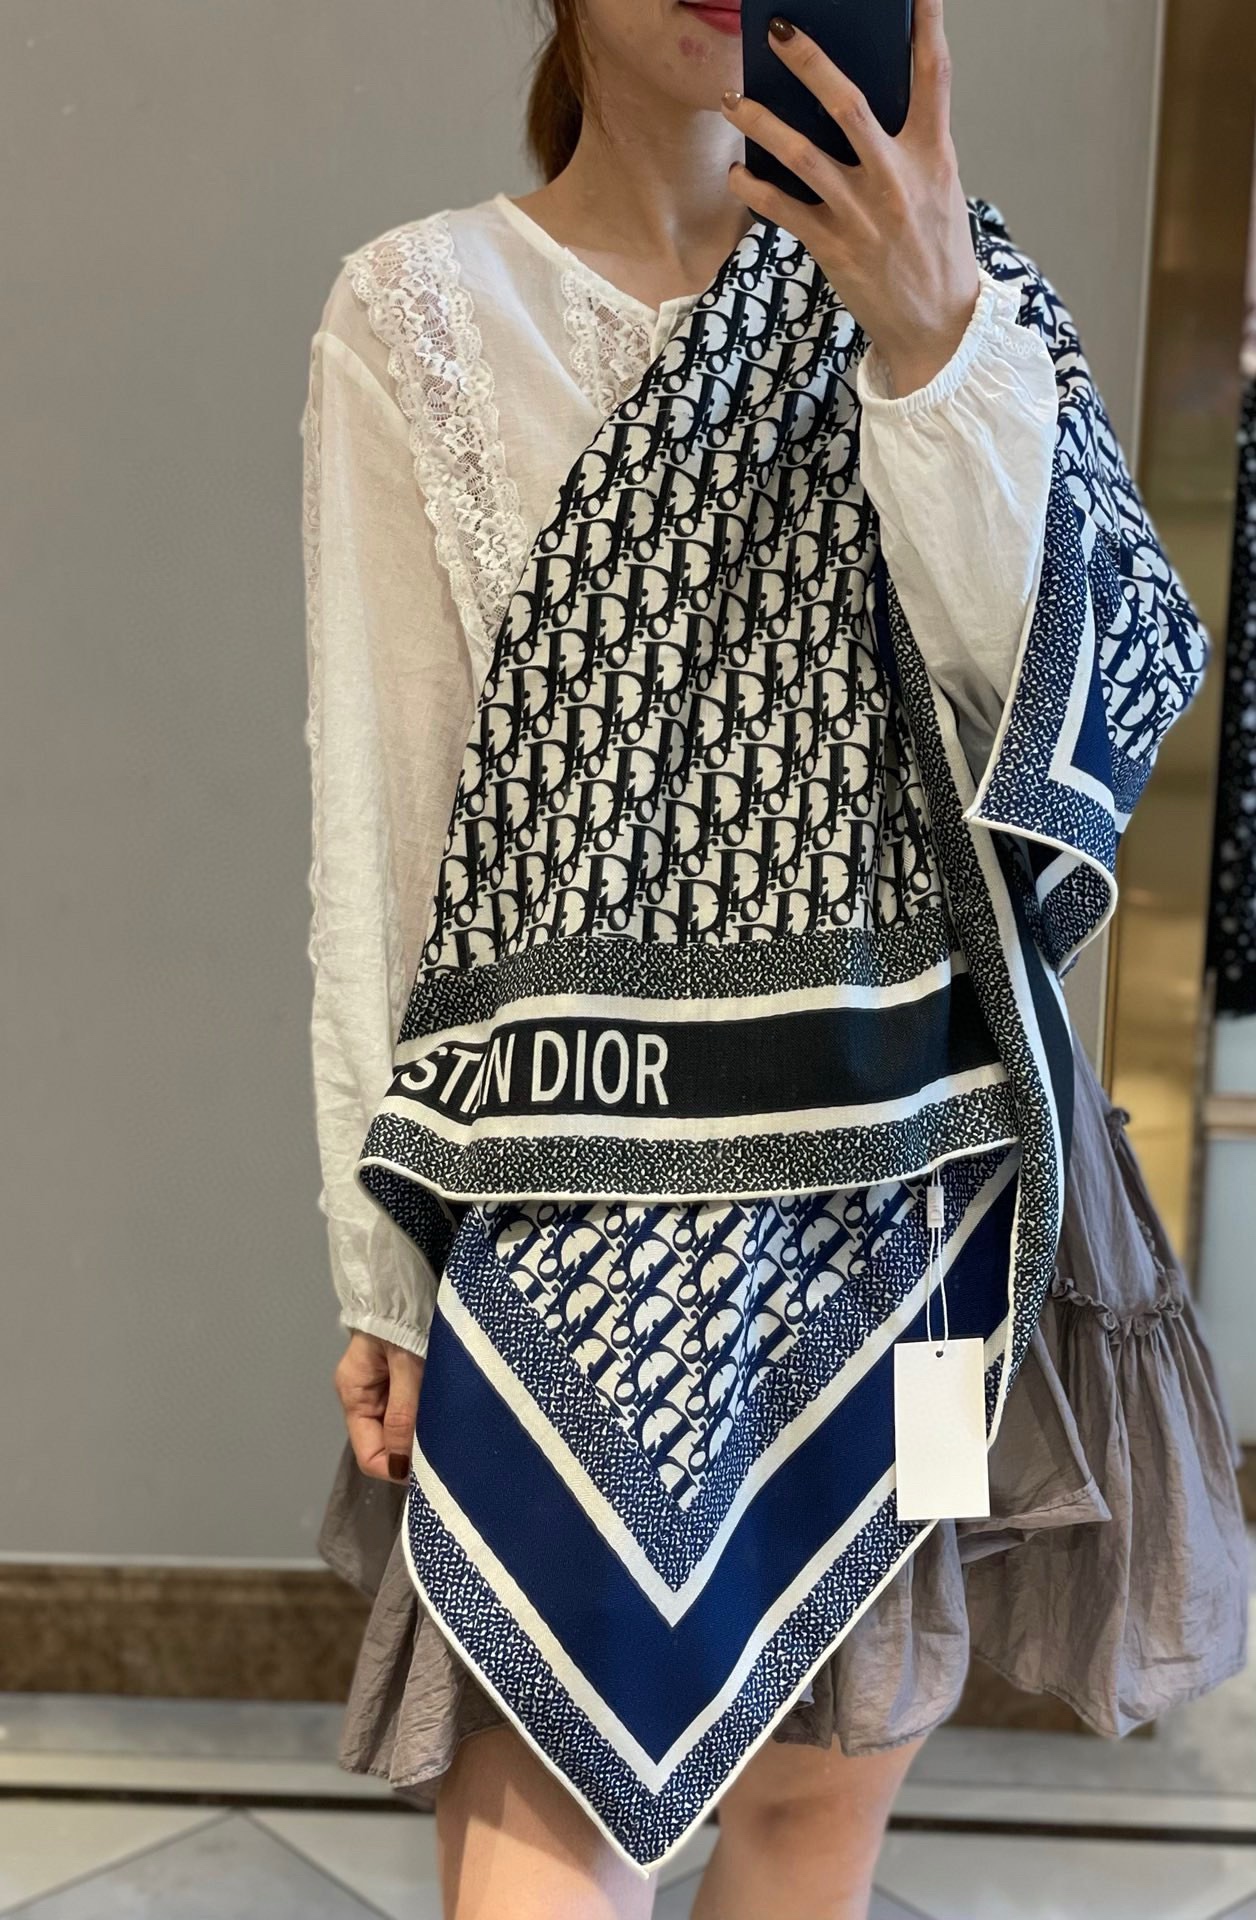 羊绒围巾有了更时尚的玩转！实物这款Dior双面披肩超高级腔调质感时髦休闲！！双色撞色的感觉在日常搭配中更